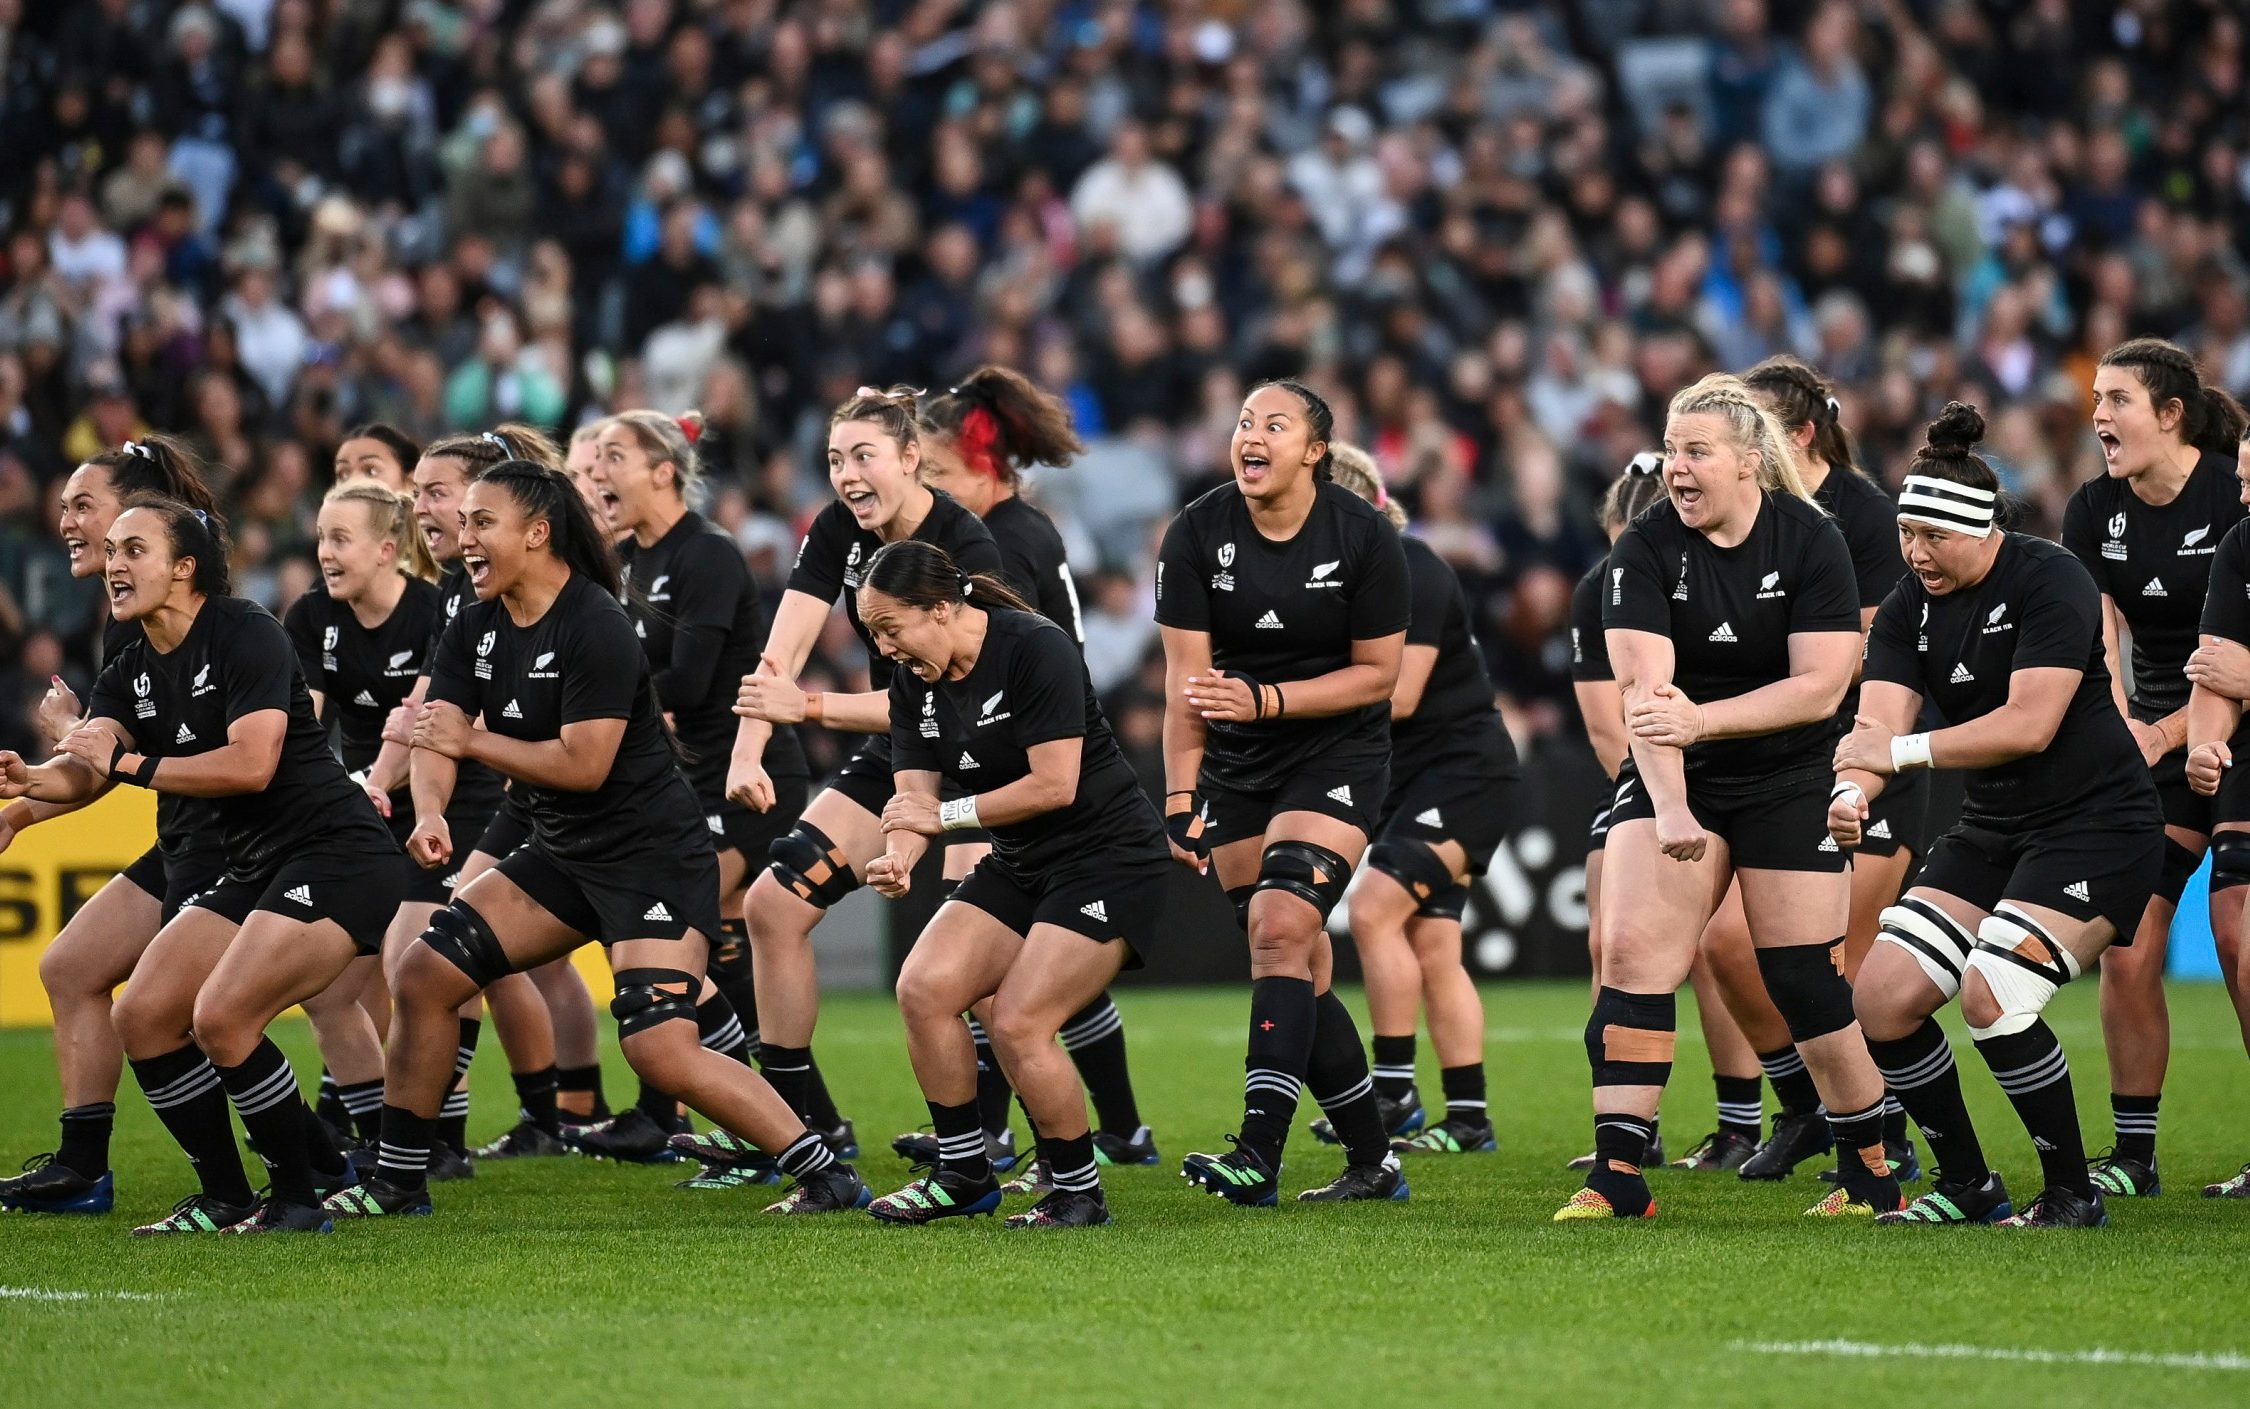 新西兰橄榄球队在与全黑队发生“令人震惊的”冲突后忘记了女足世界杯